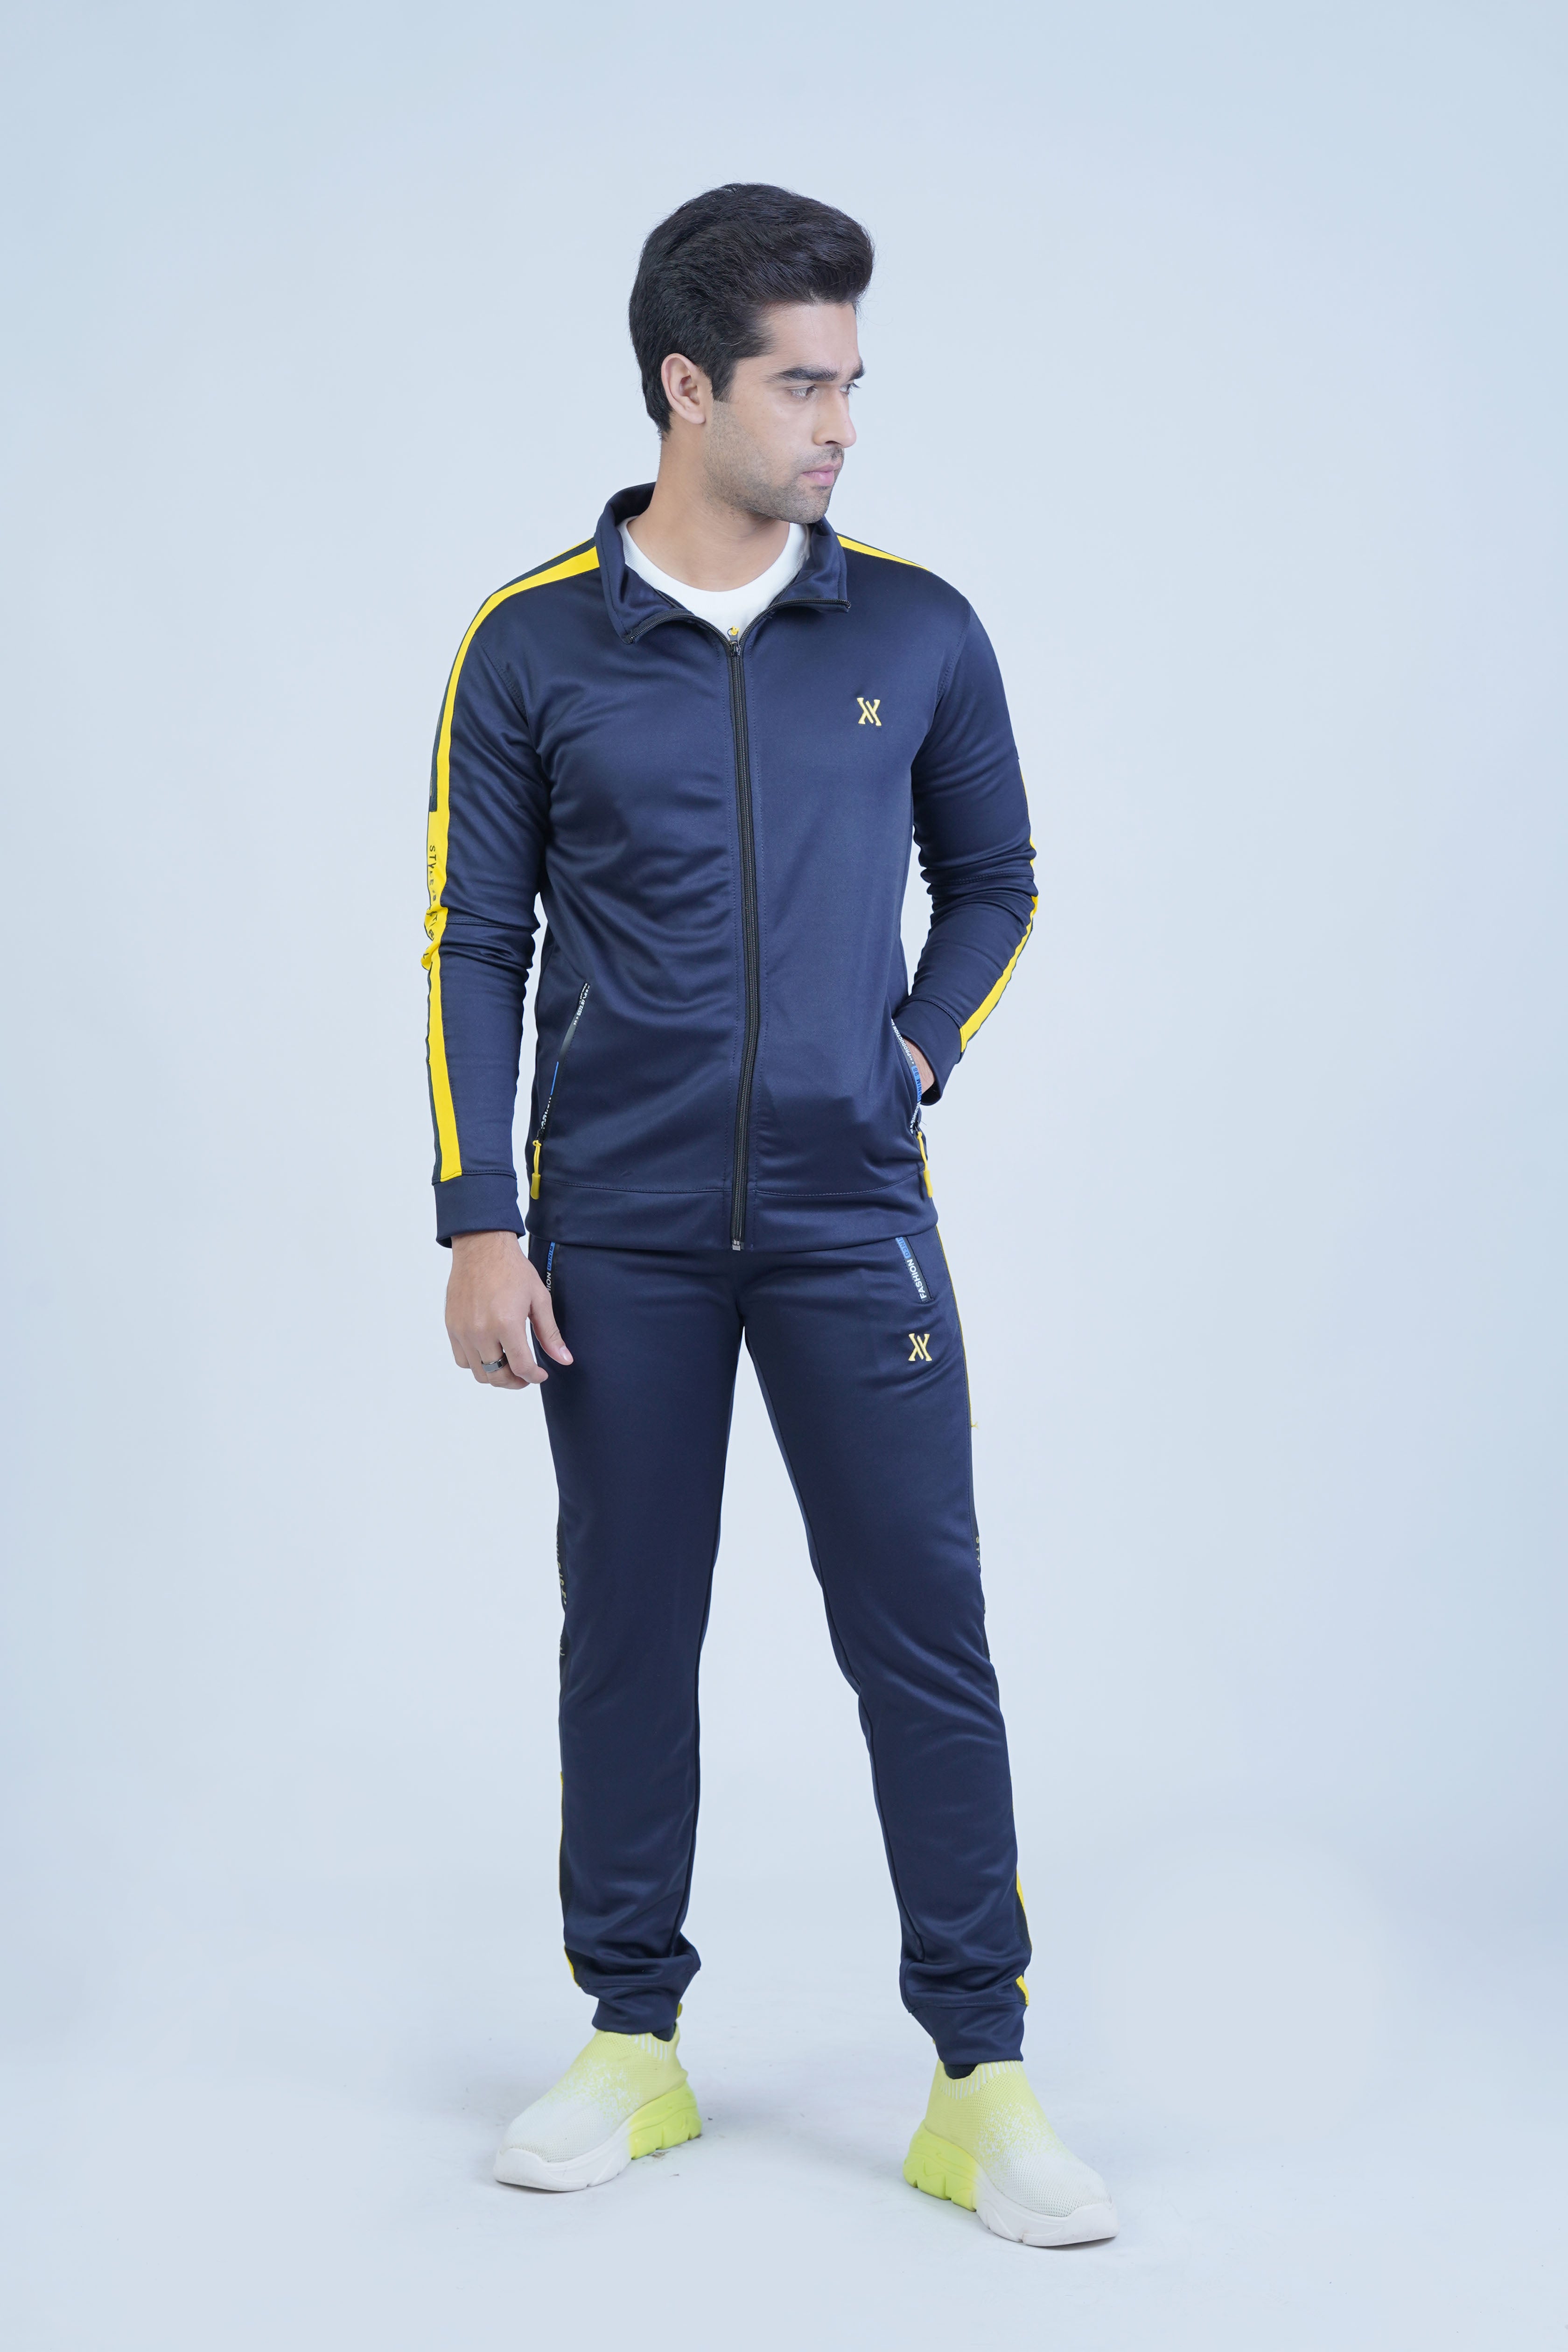  Monochromatic Premium Tracksuits - The Xea Men's Sportswear Collection